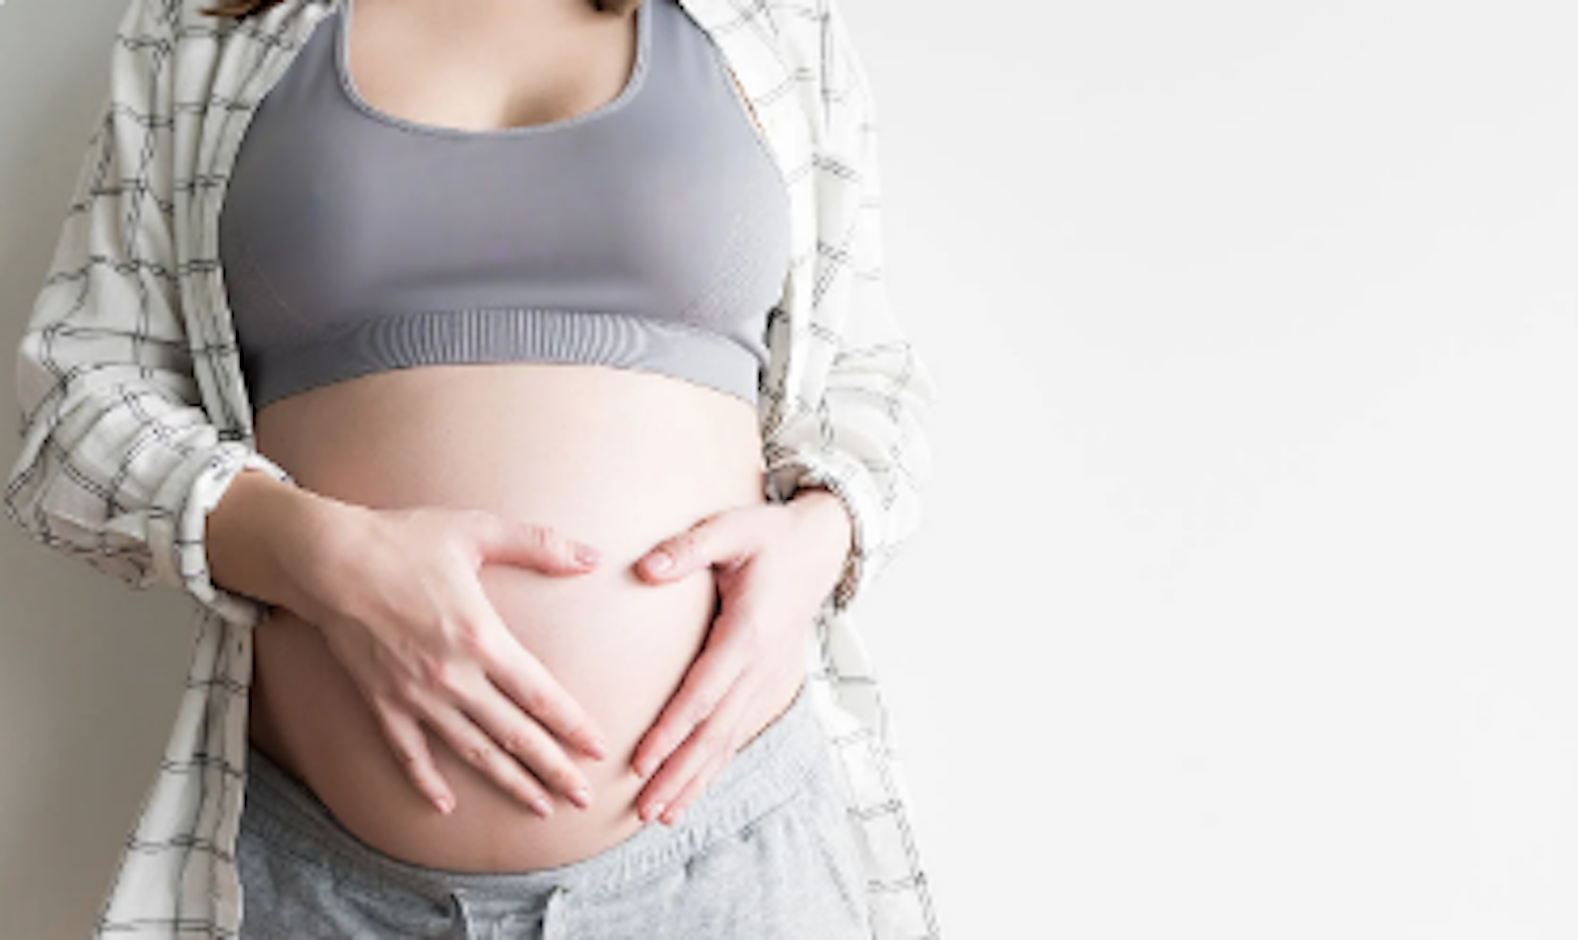 Mujeres posponen su maternidad en forma riesgosa Plan M